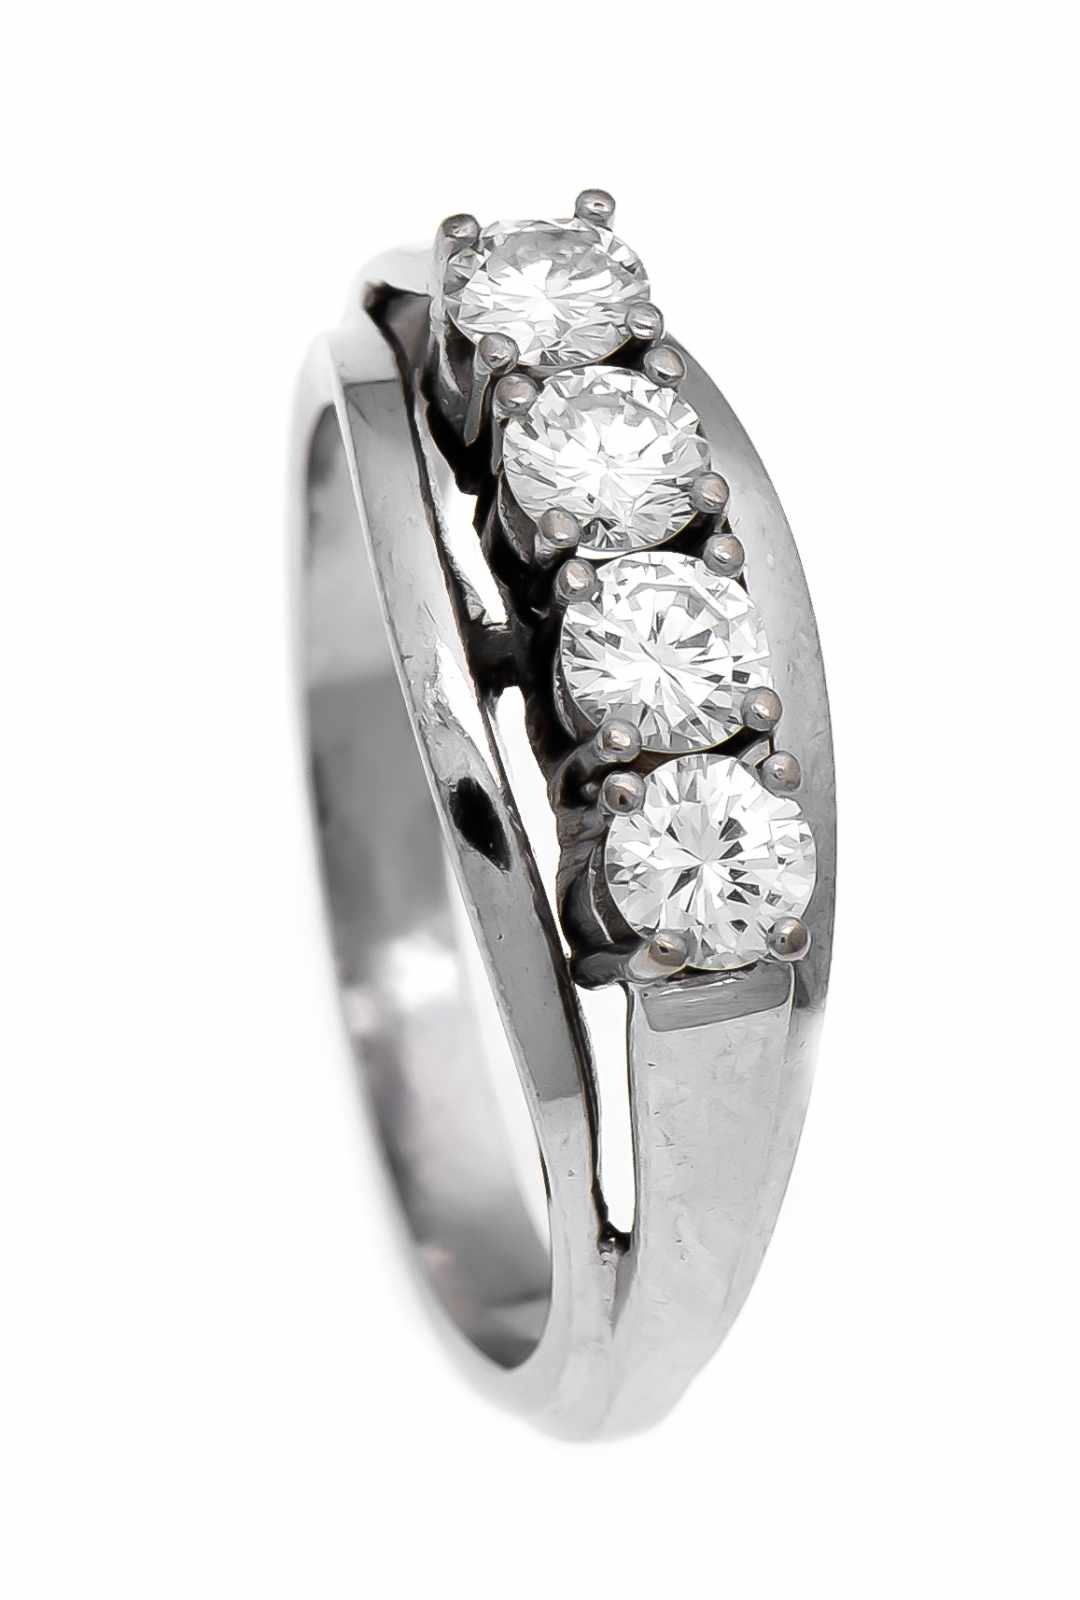 Brillant-Ring GG 585/000 mit 4 Brillanten, zus. 0,93 ct TW/lupenrein, RG 58, 6,3 g